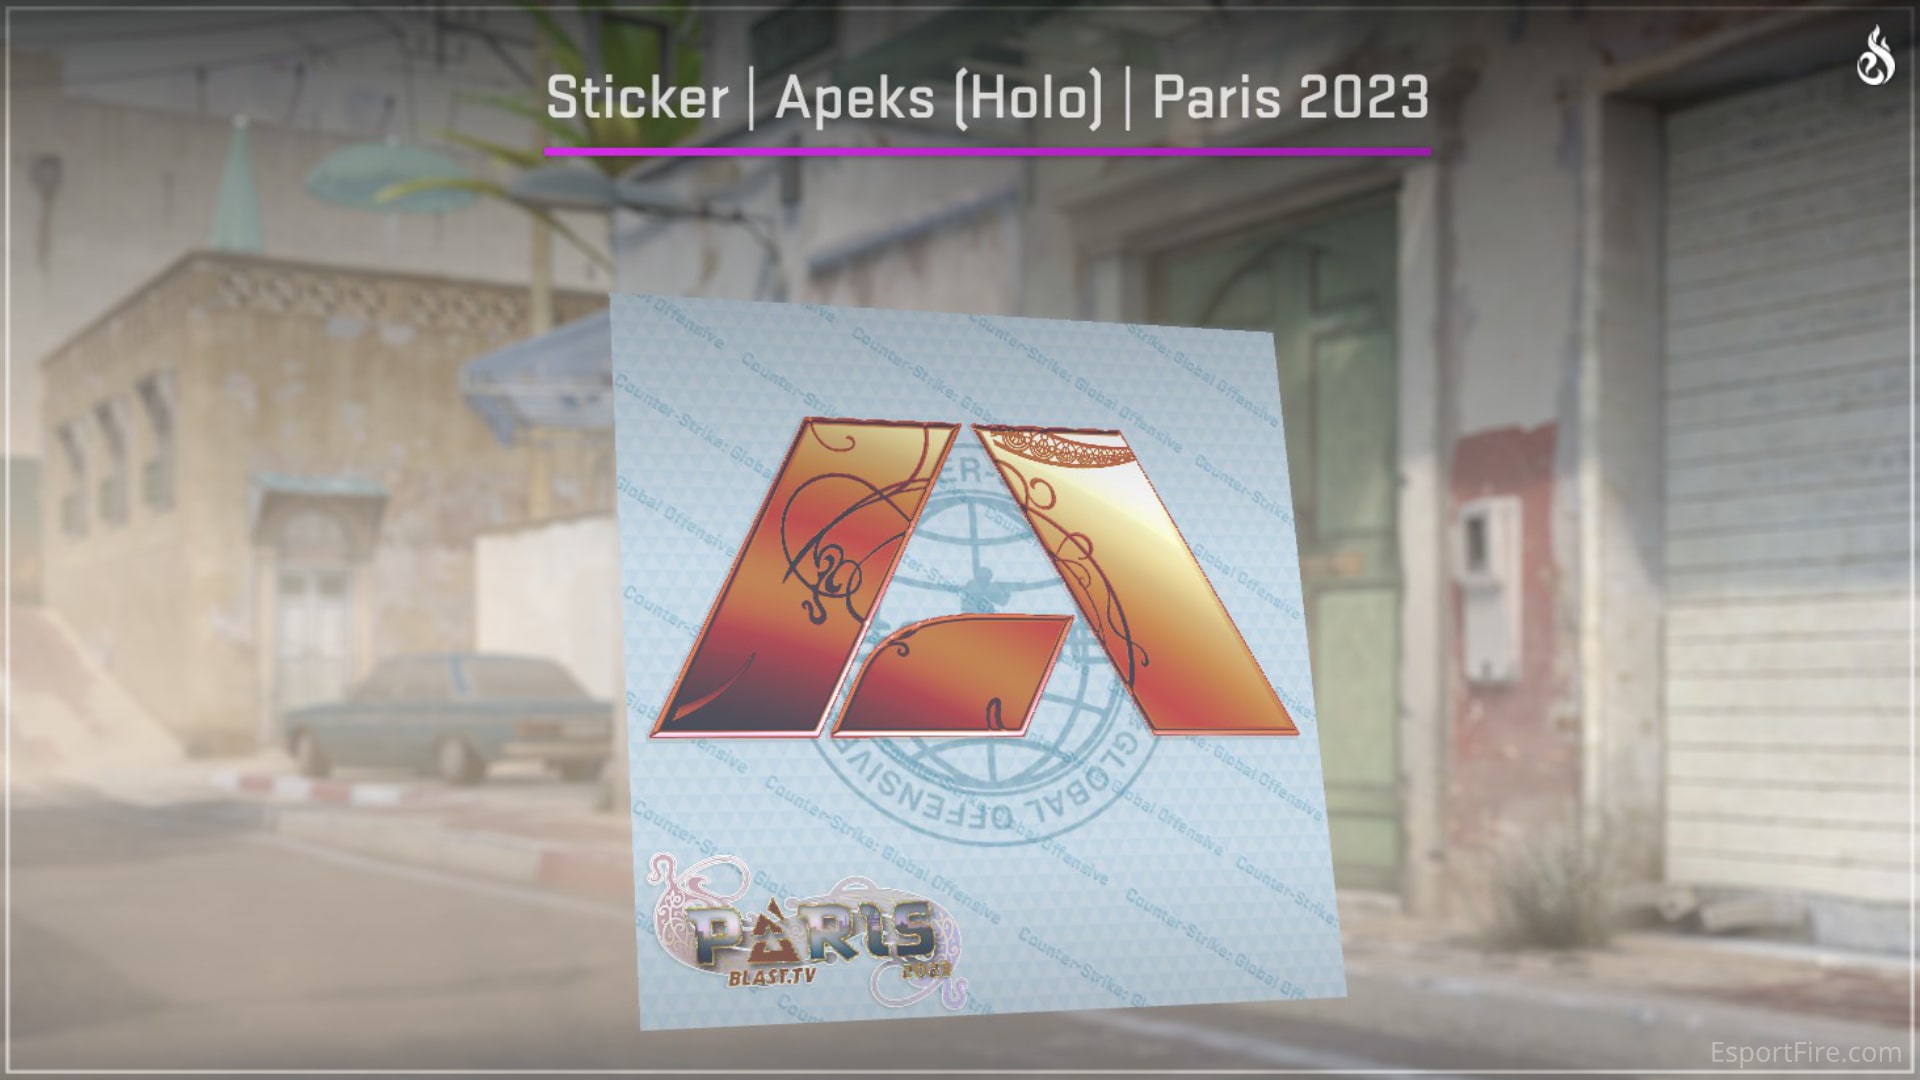 Apeks Paris 2023 - Best Orange Stickers for Crafts